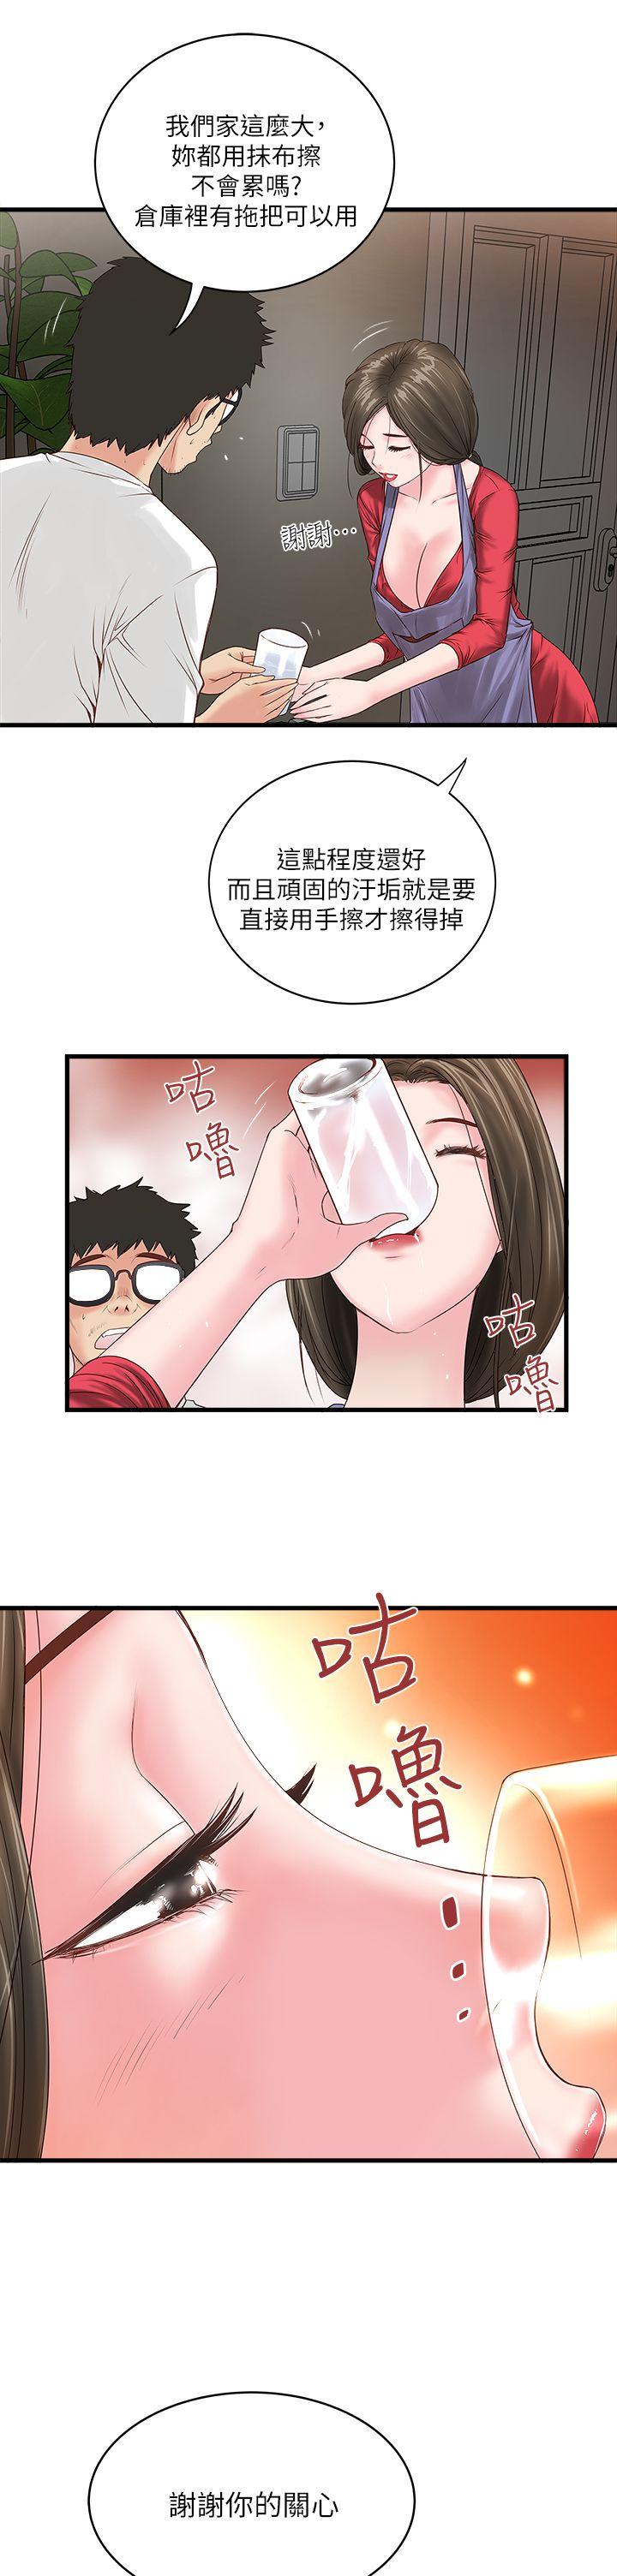 韩国污漫画 下女,初希 第2话-没穿内衣的家政妇 8